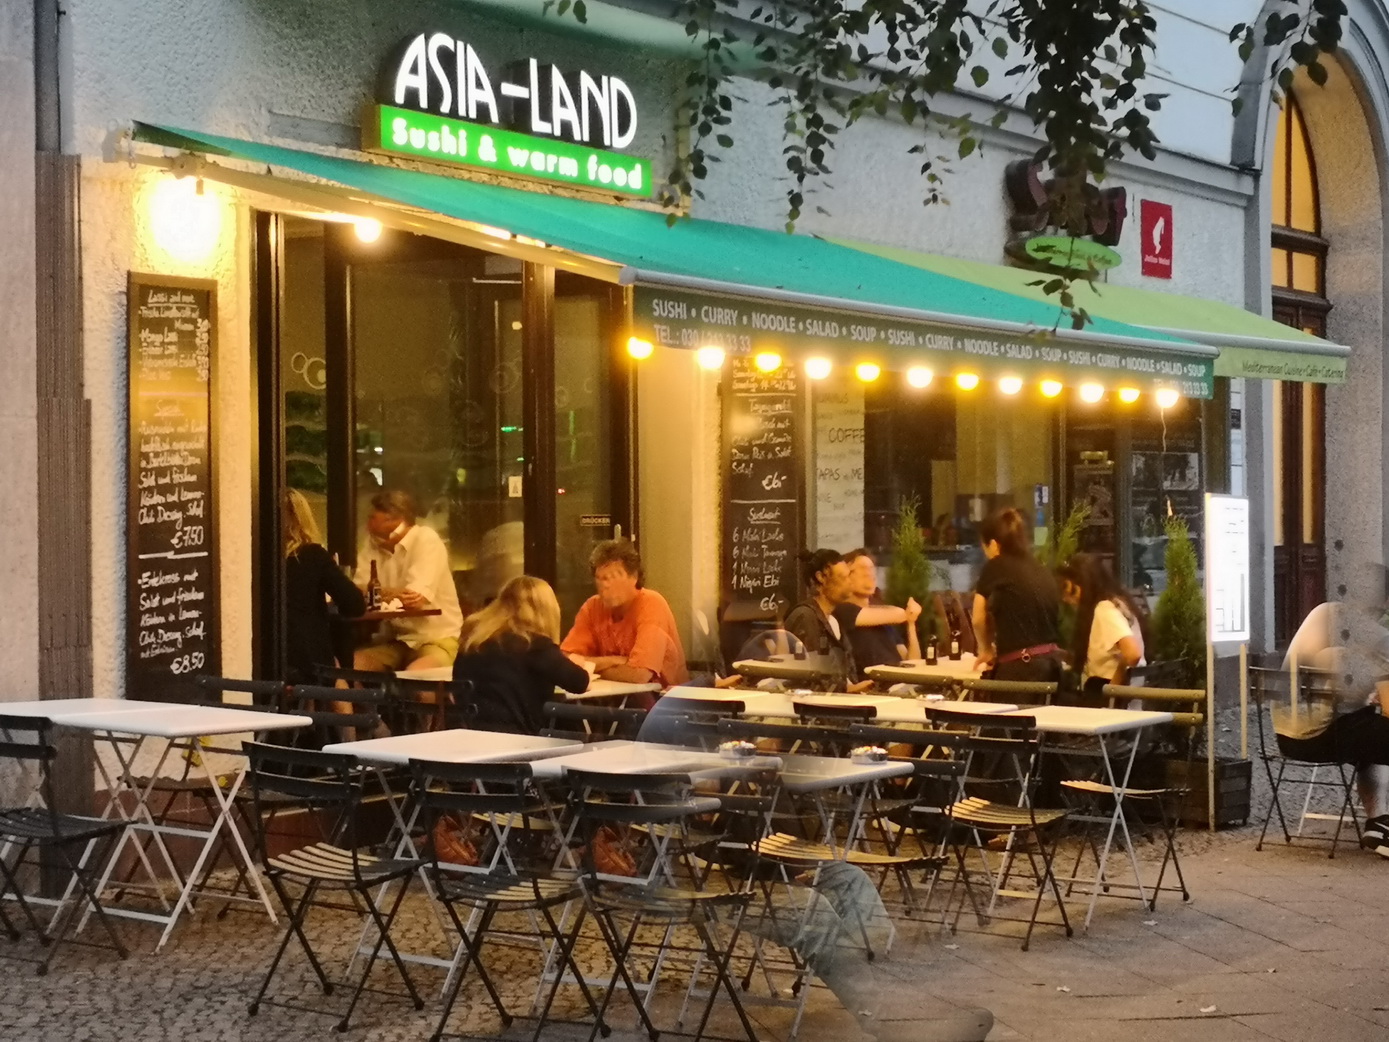 Berlin Restaurant ASIA-LAND Aussenansicht mit Terrasse